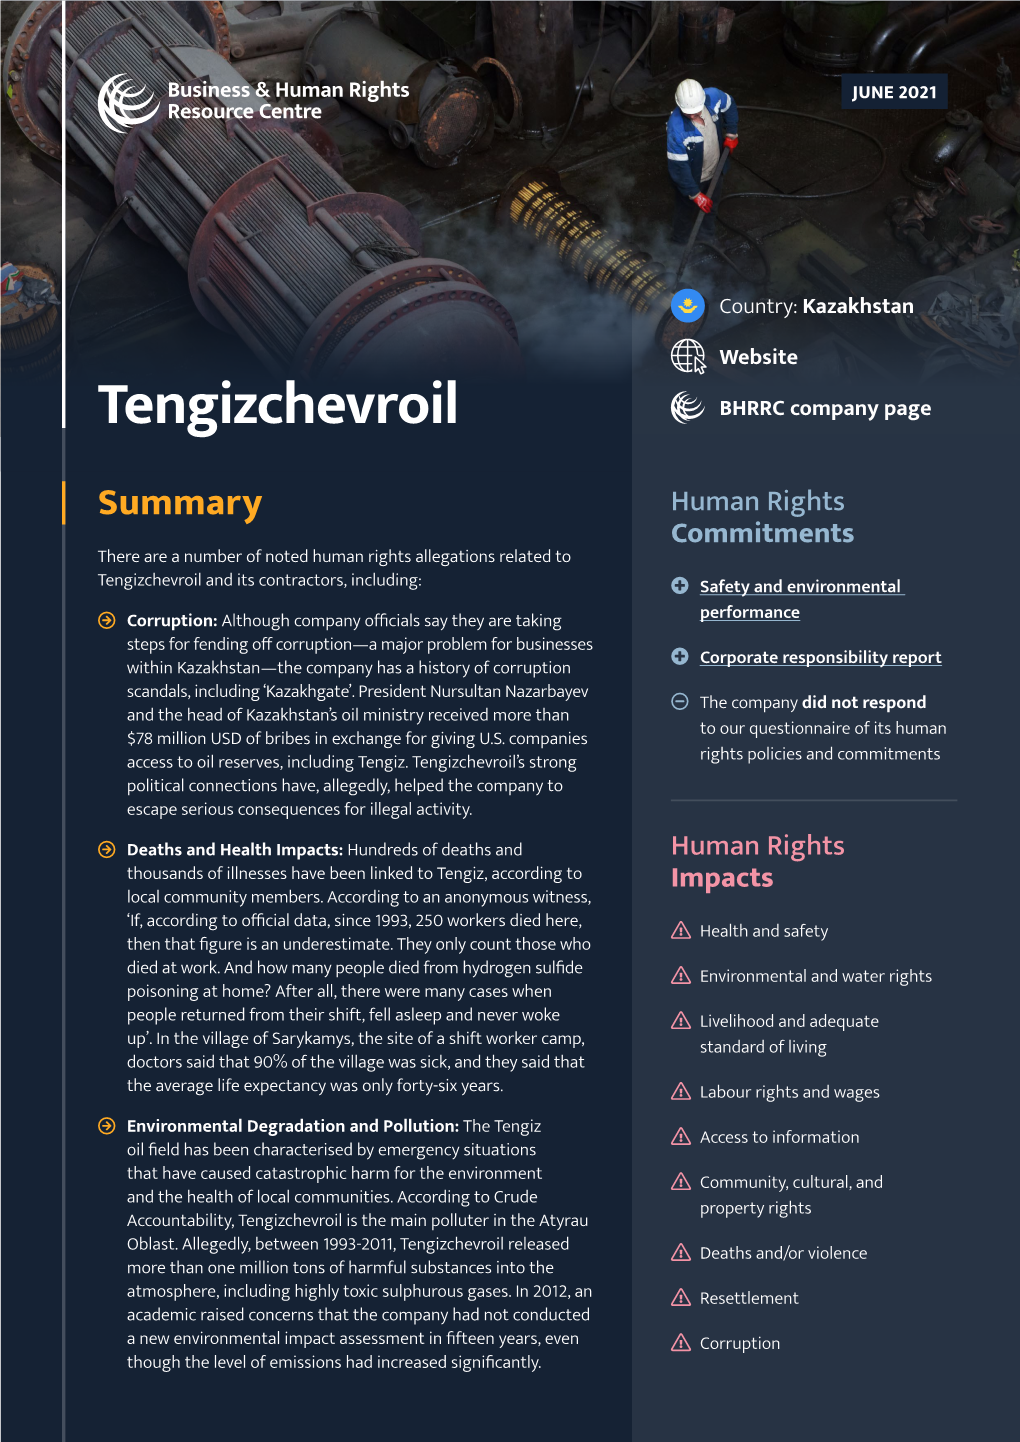 Tengizchevroil BHRRC Company Page